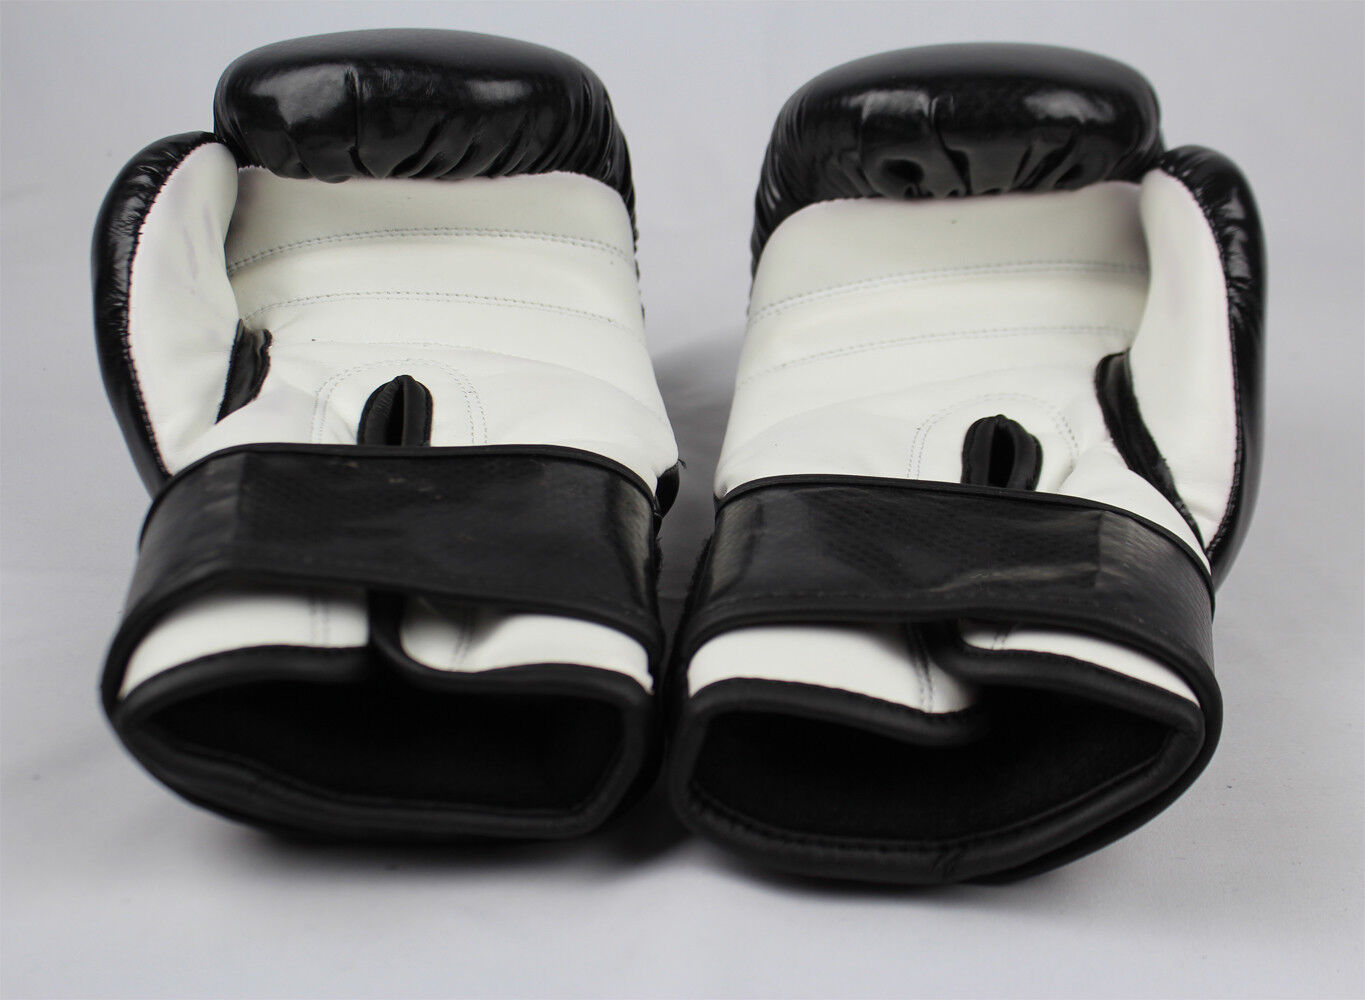 Kanku Boxing Gloves Black 6, 8, 10, 12, 14, 16 Oz for Training Sparring ...